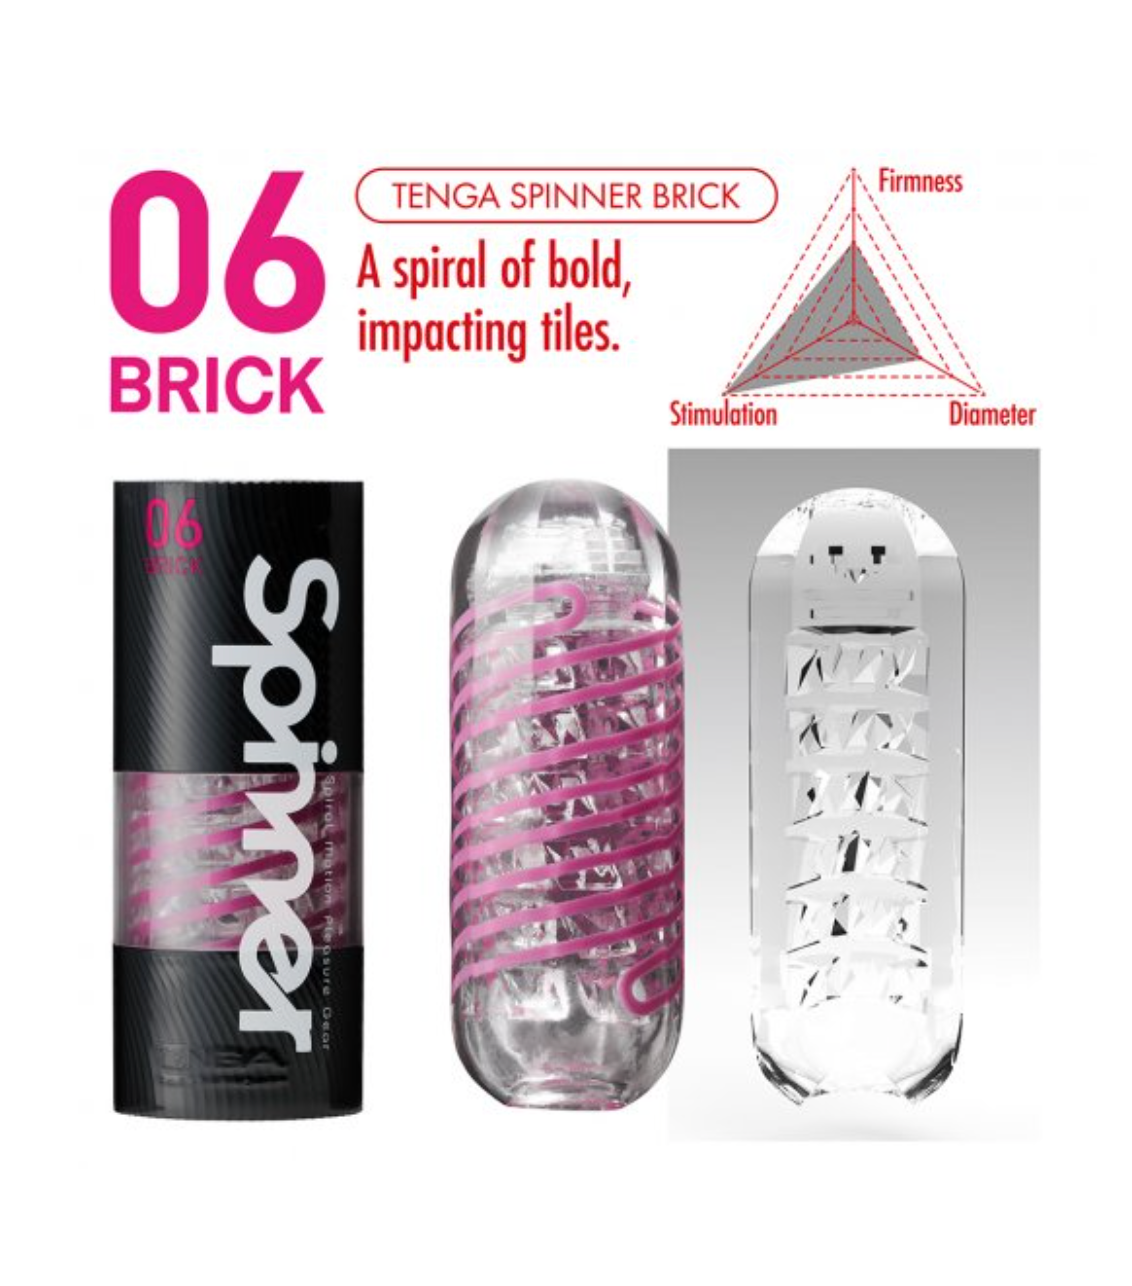 Tenga Spinner - 06 Brick Stroker